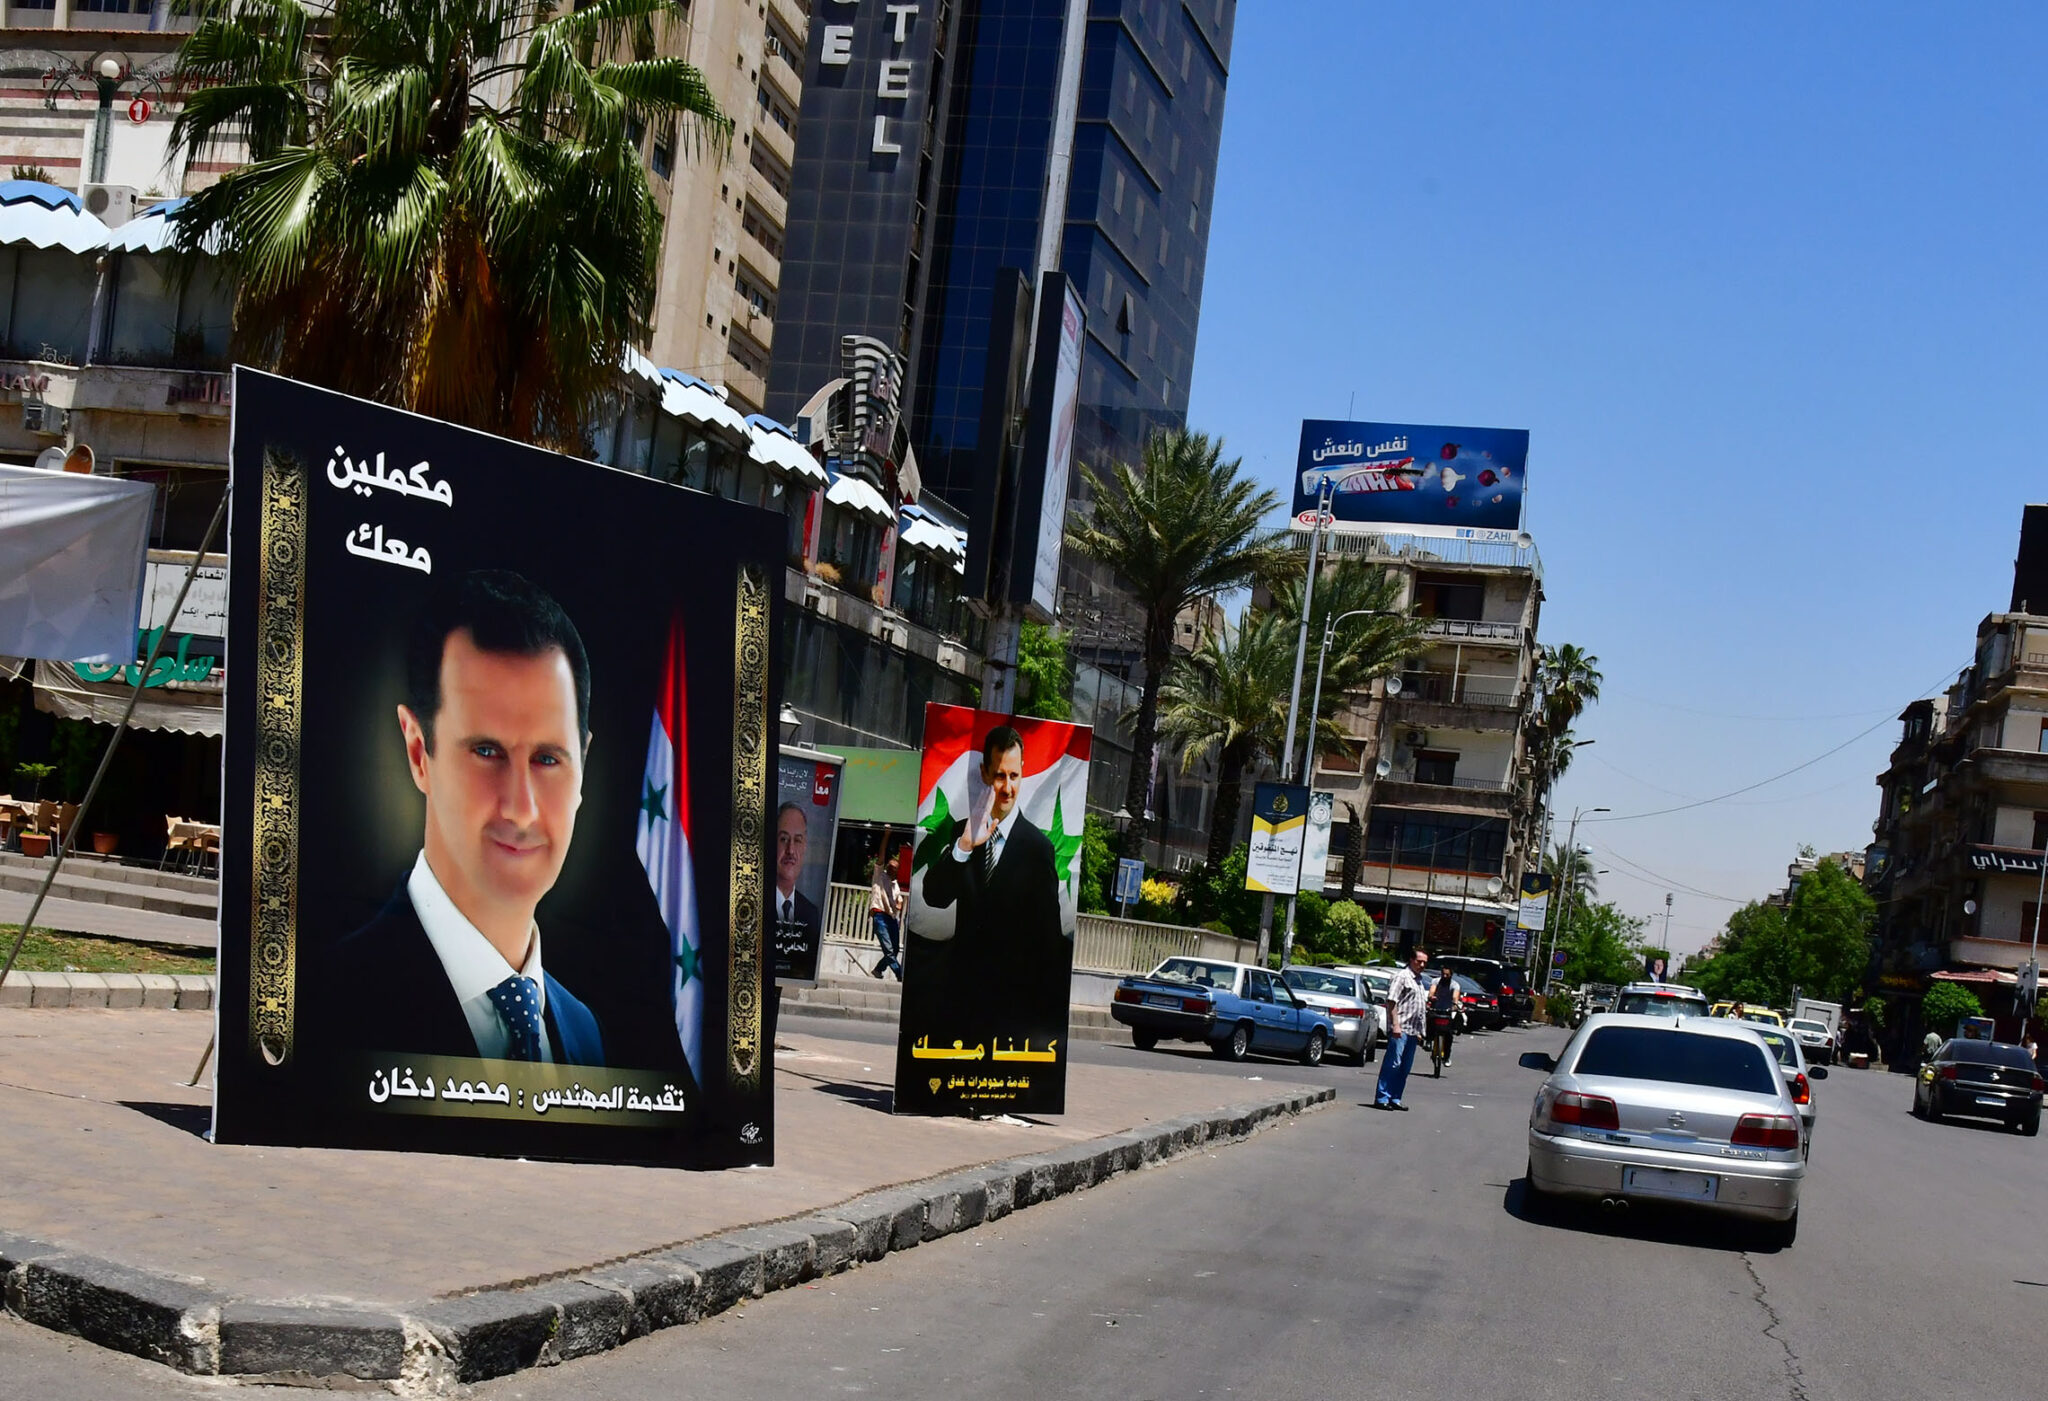 بشار الأسد يؤدّي اليمين الدستورية لولاية رابعة من سبع سنوات